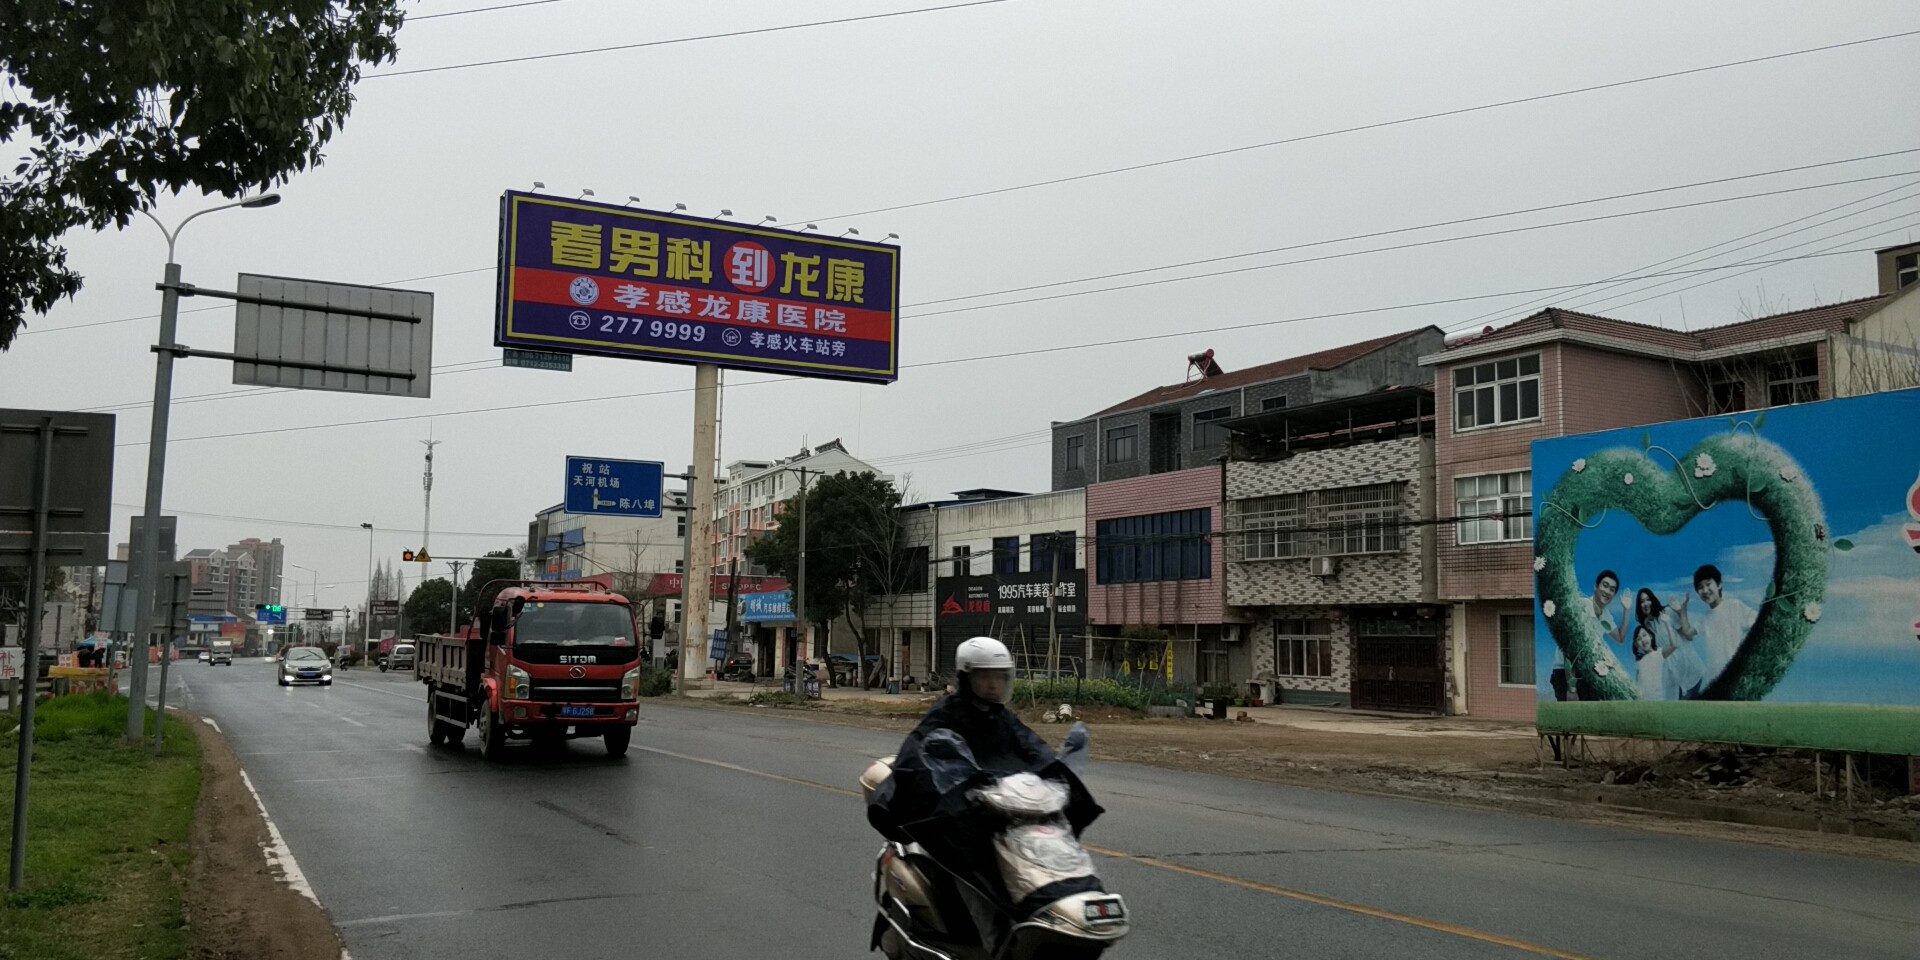 京珠高速处龙康医院广告牌